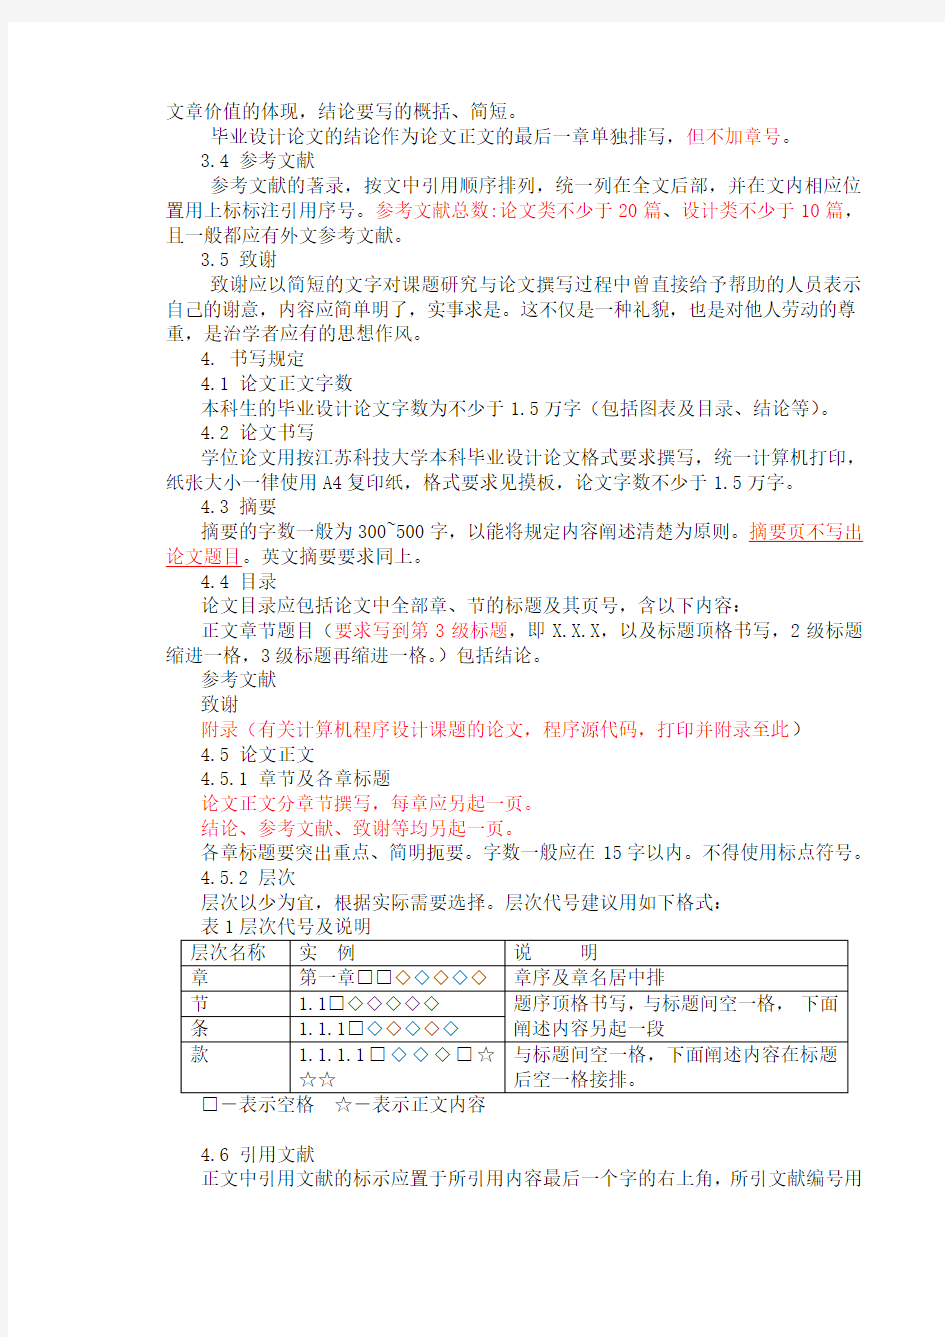 江苏科技大学毕业设计(论文)撰写规范(含封面格式)